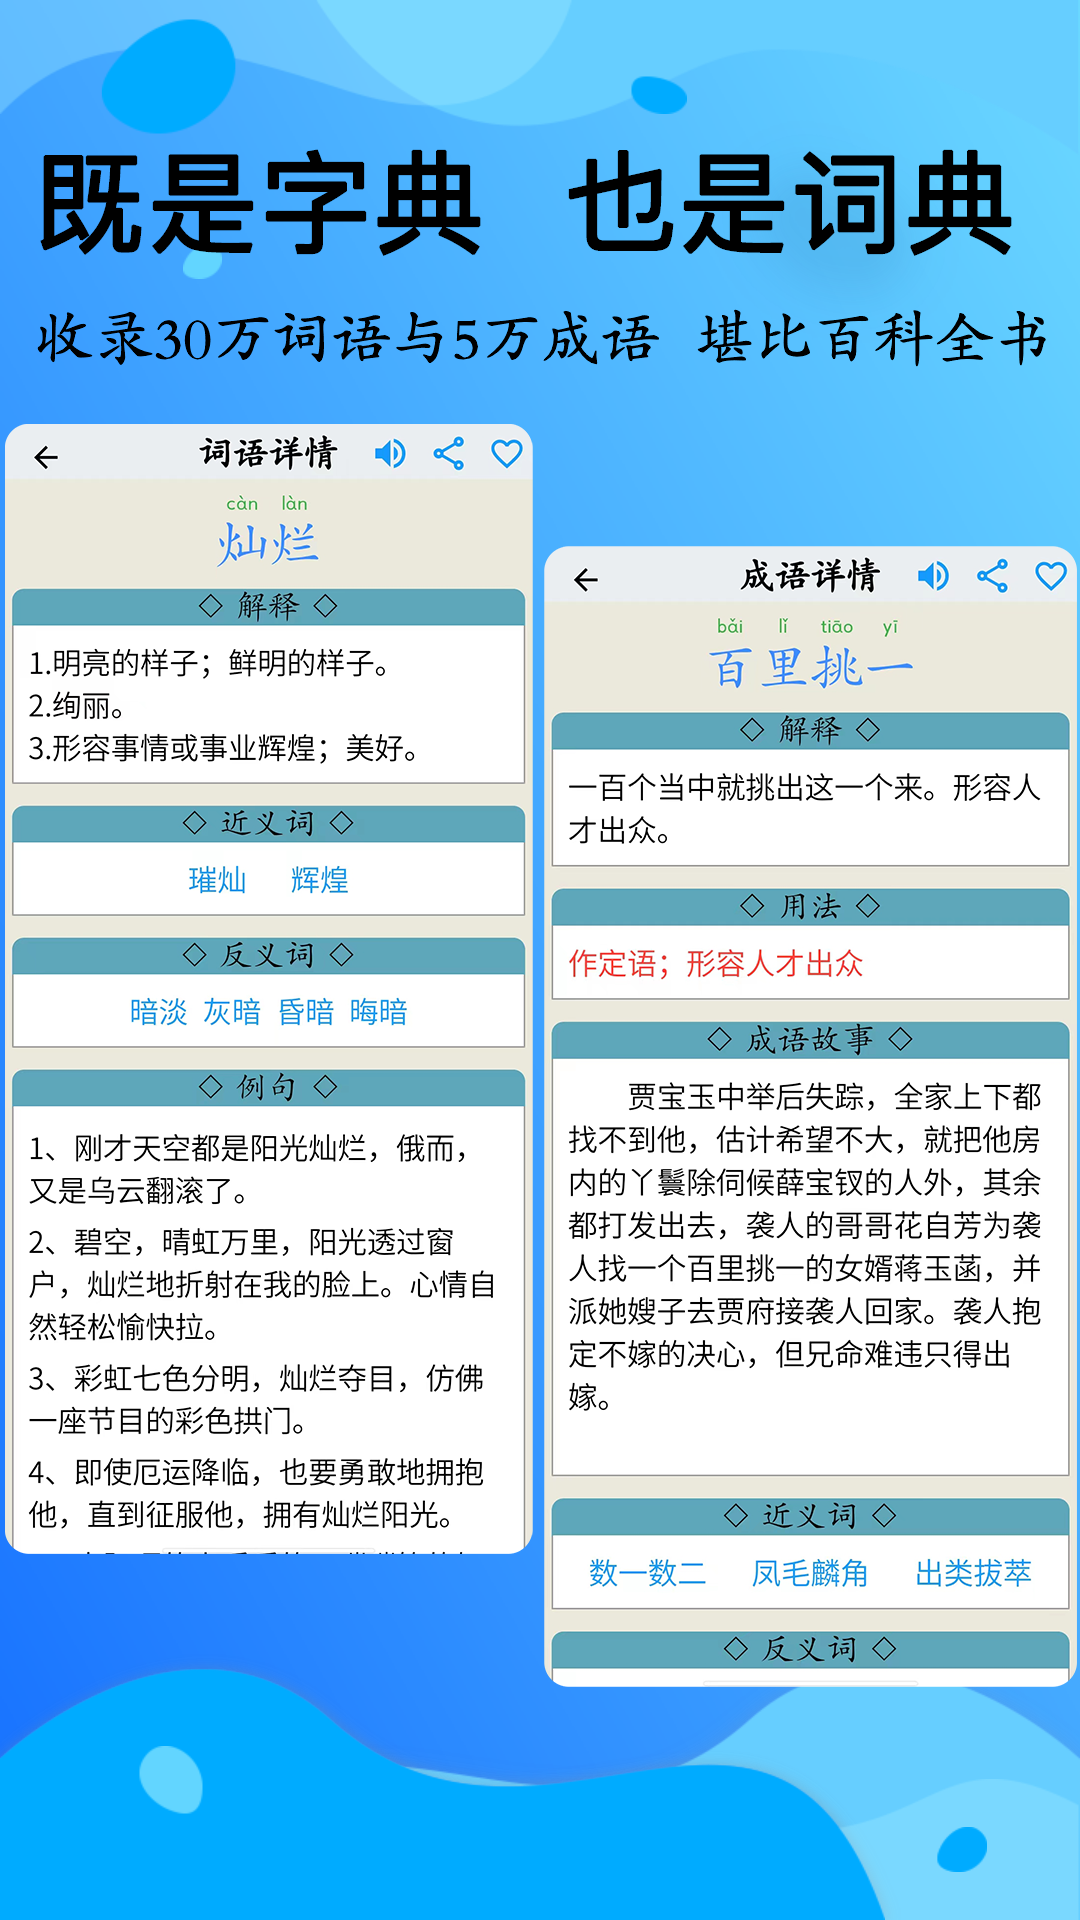 简明汉语字典